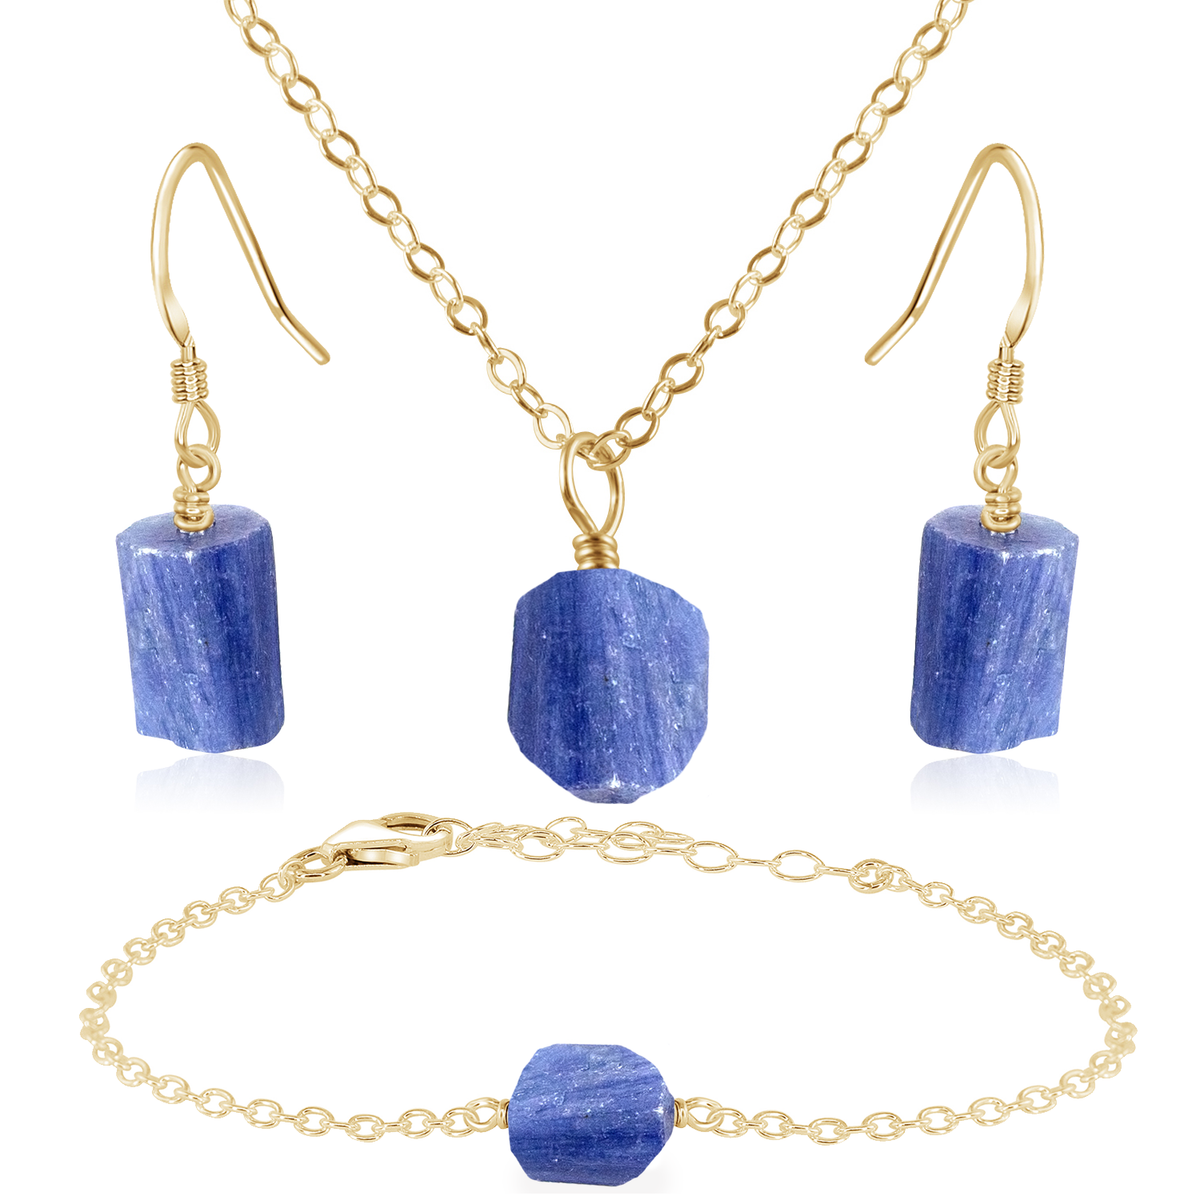 Raw Kyanite Crystal Jewellery Set - Raw Kyanite Crystal Jewellery Set - 14k Gold Fill / Cable / Necklace & Earrings & Bracelet - Luna Tide Handmade Crystal Jewellery